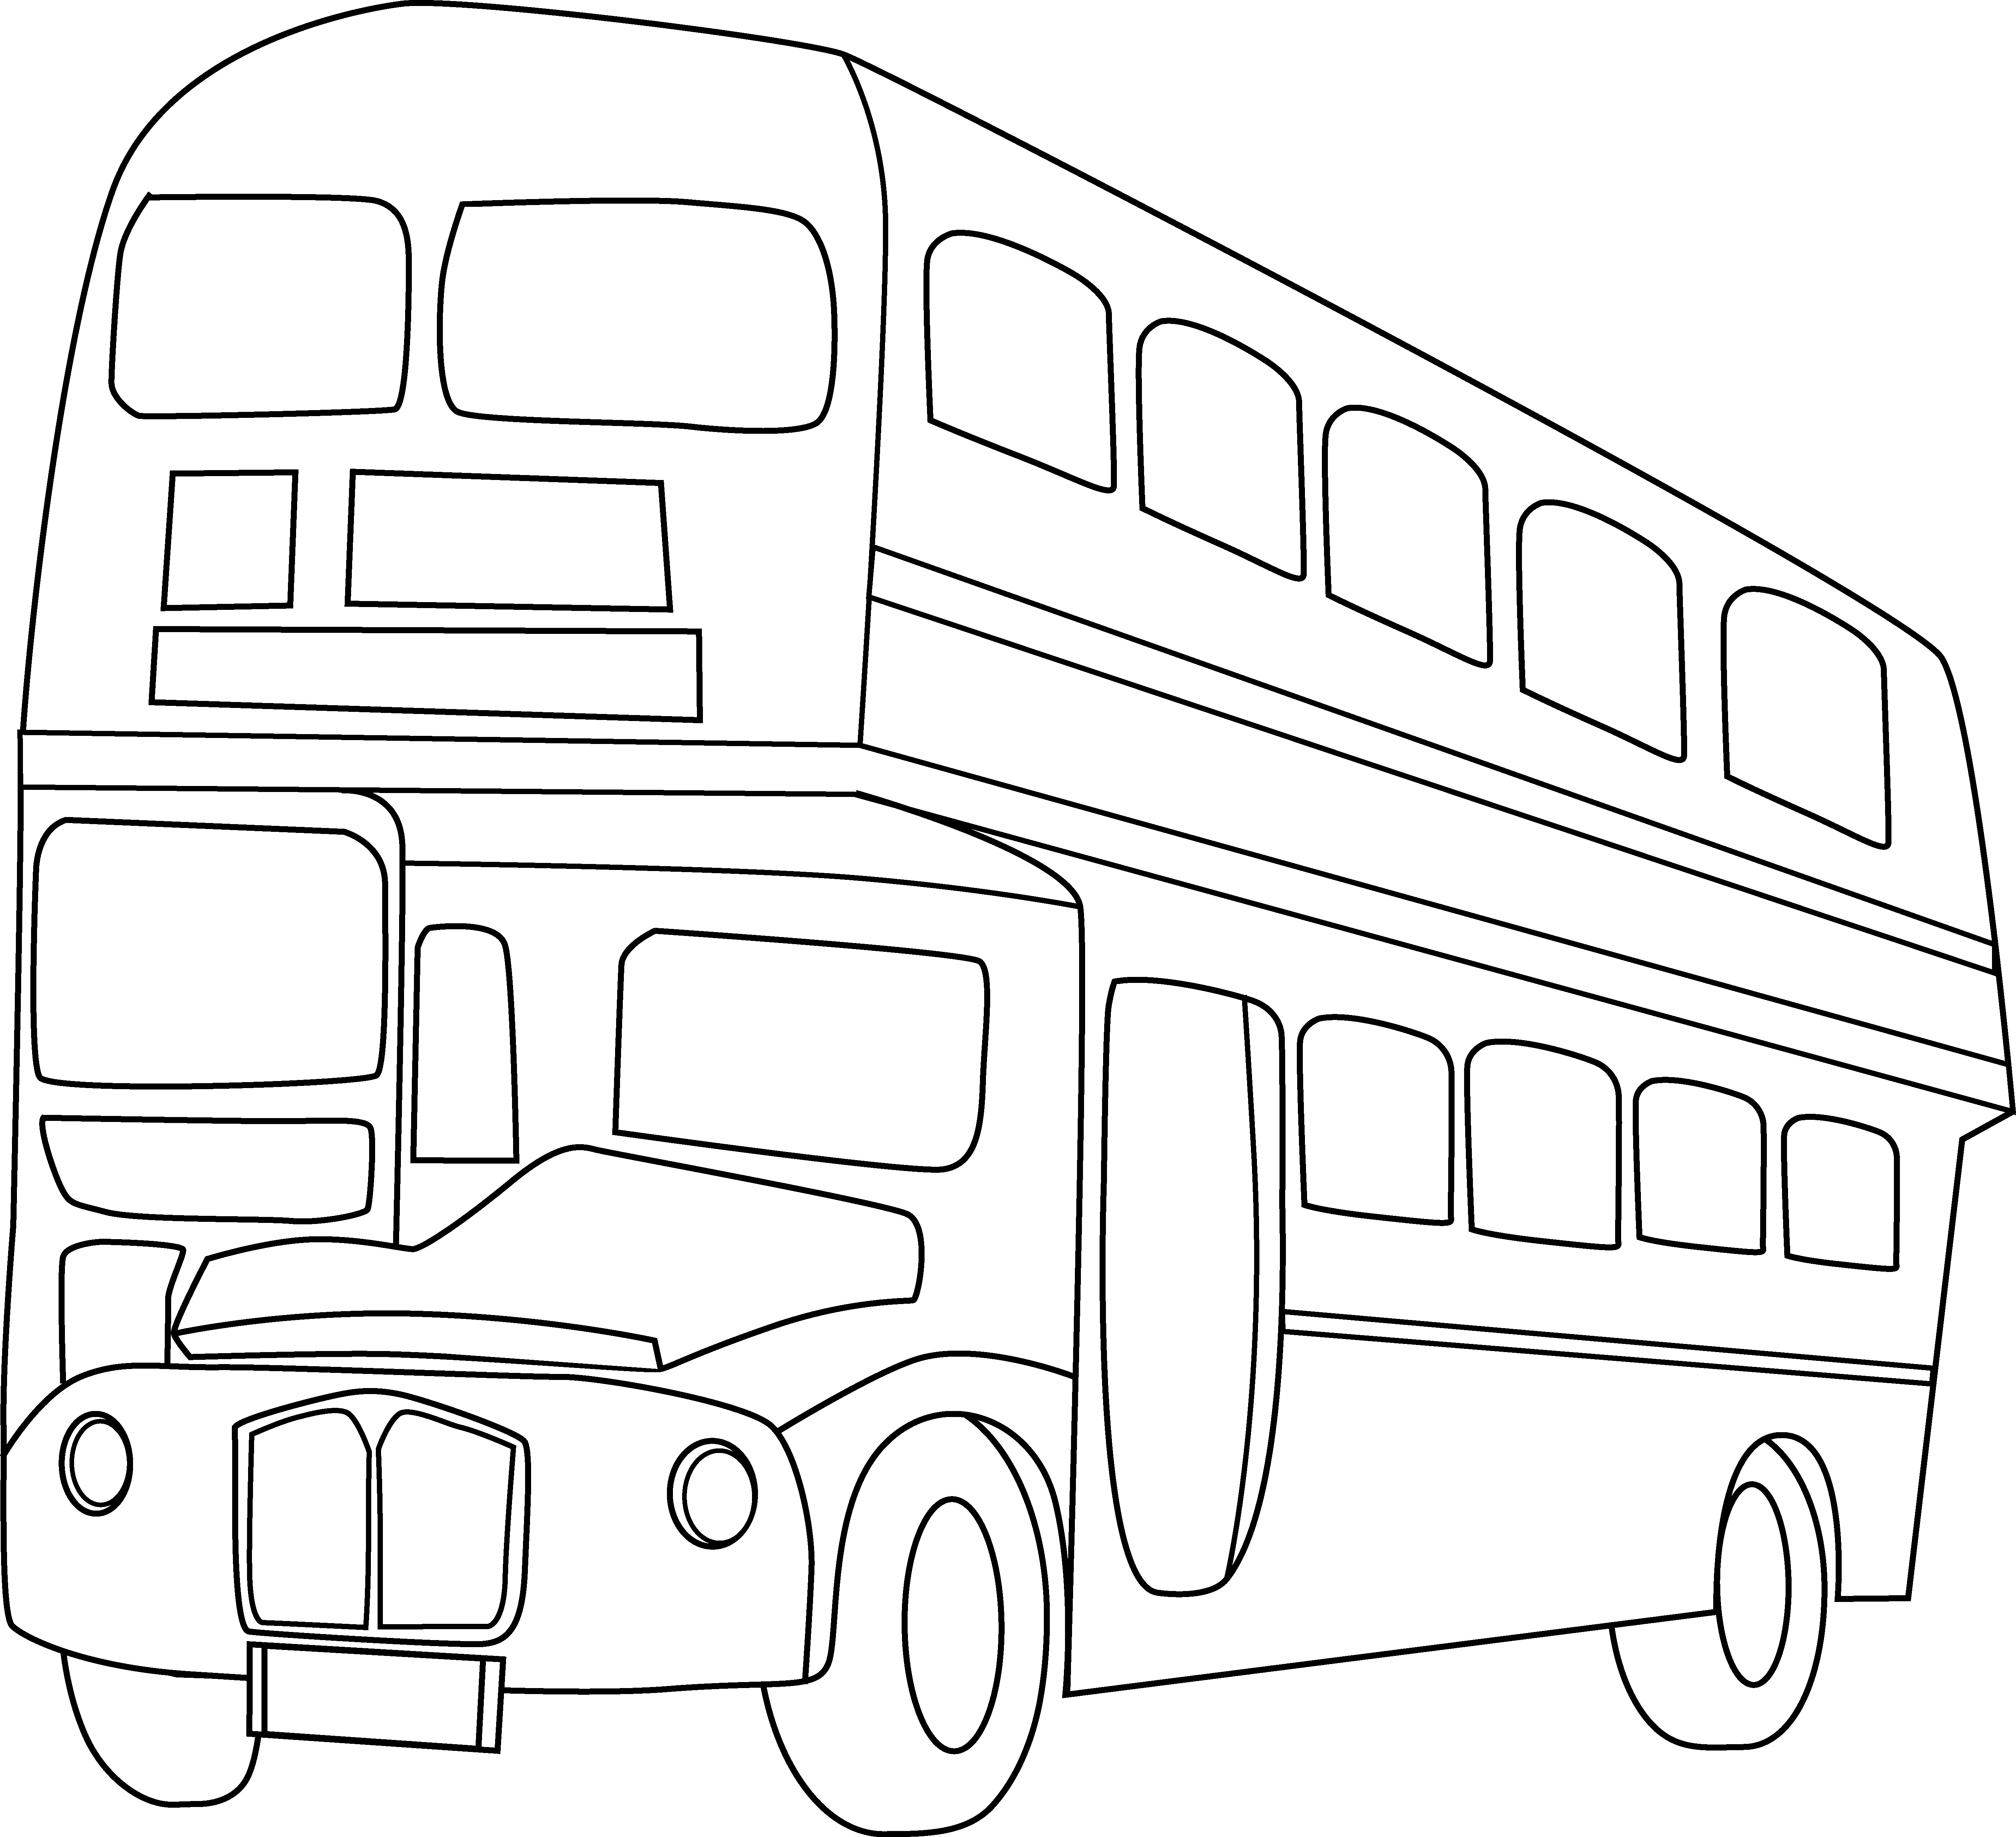 Автобус нарисовать легко